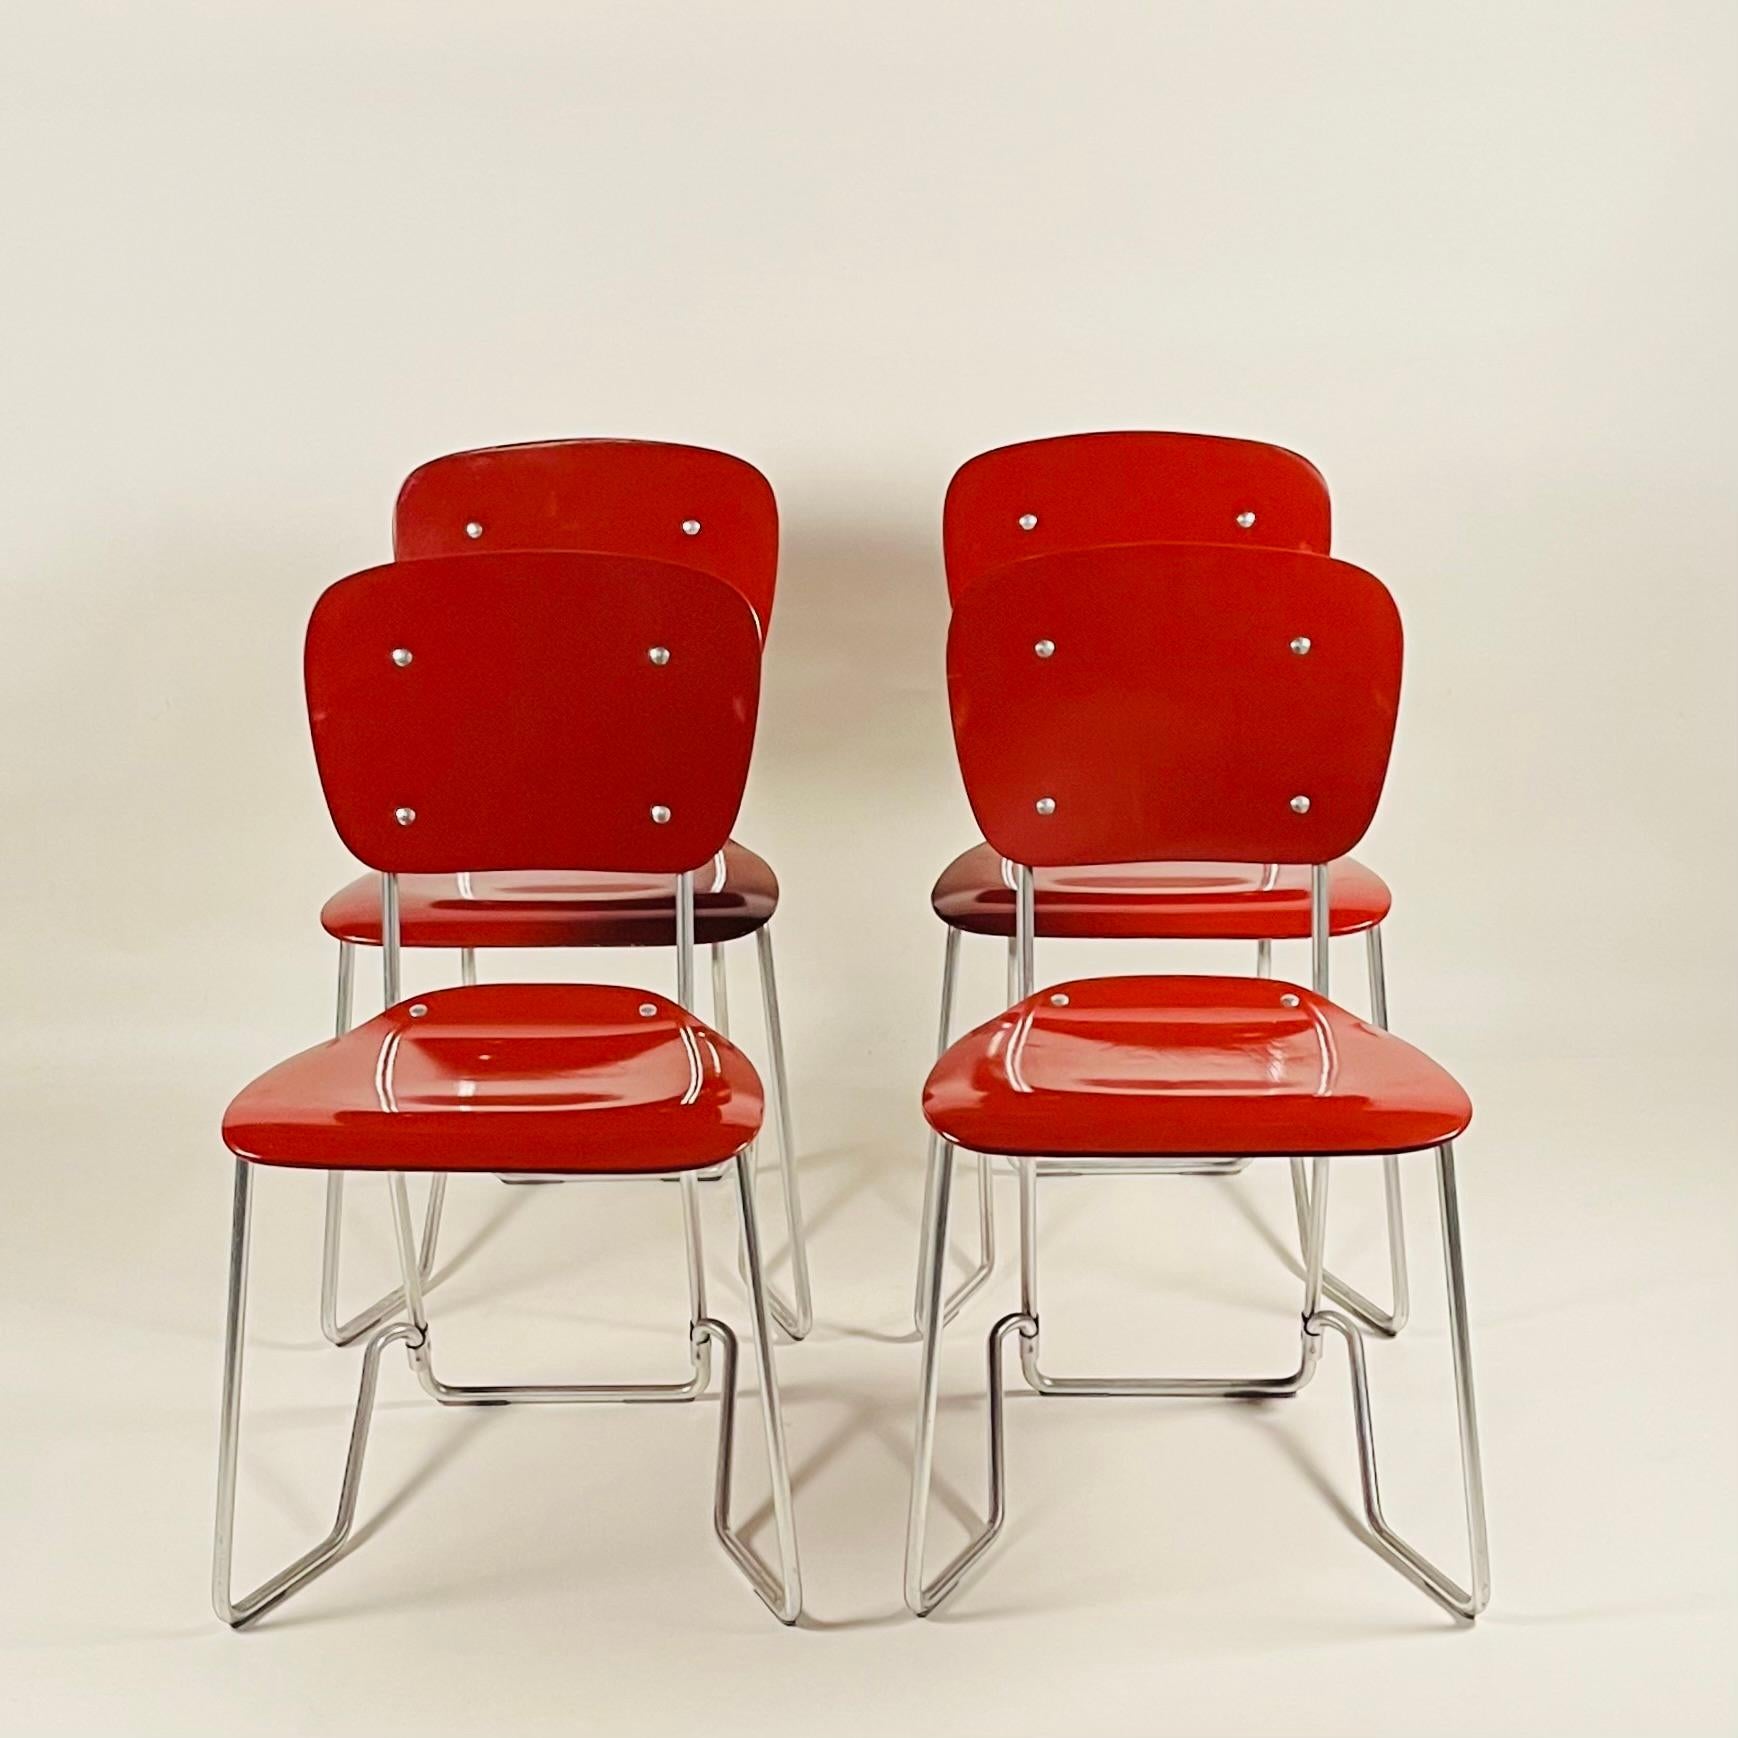 Stackable Aluflex chairs designed by Armin Wirth.
Manufactured by Aluflex, Switzerland, circa 1950.
